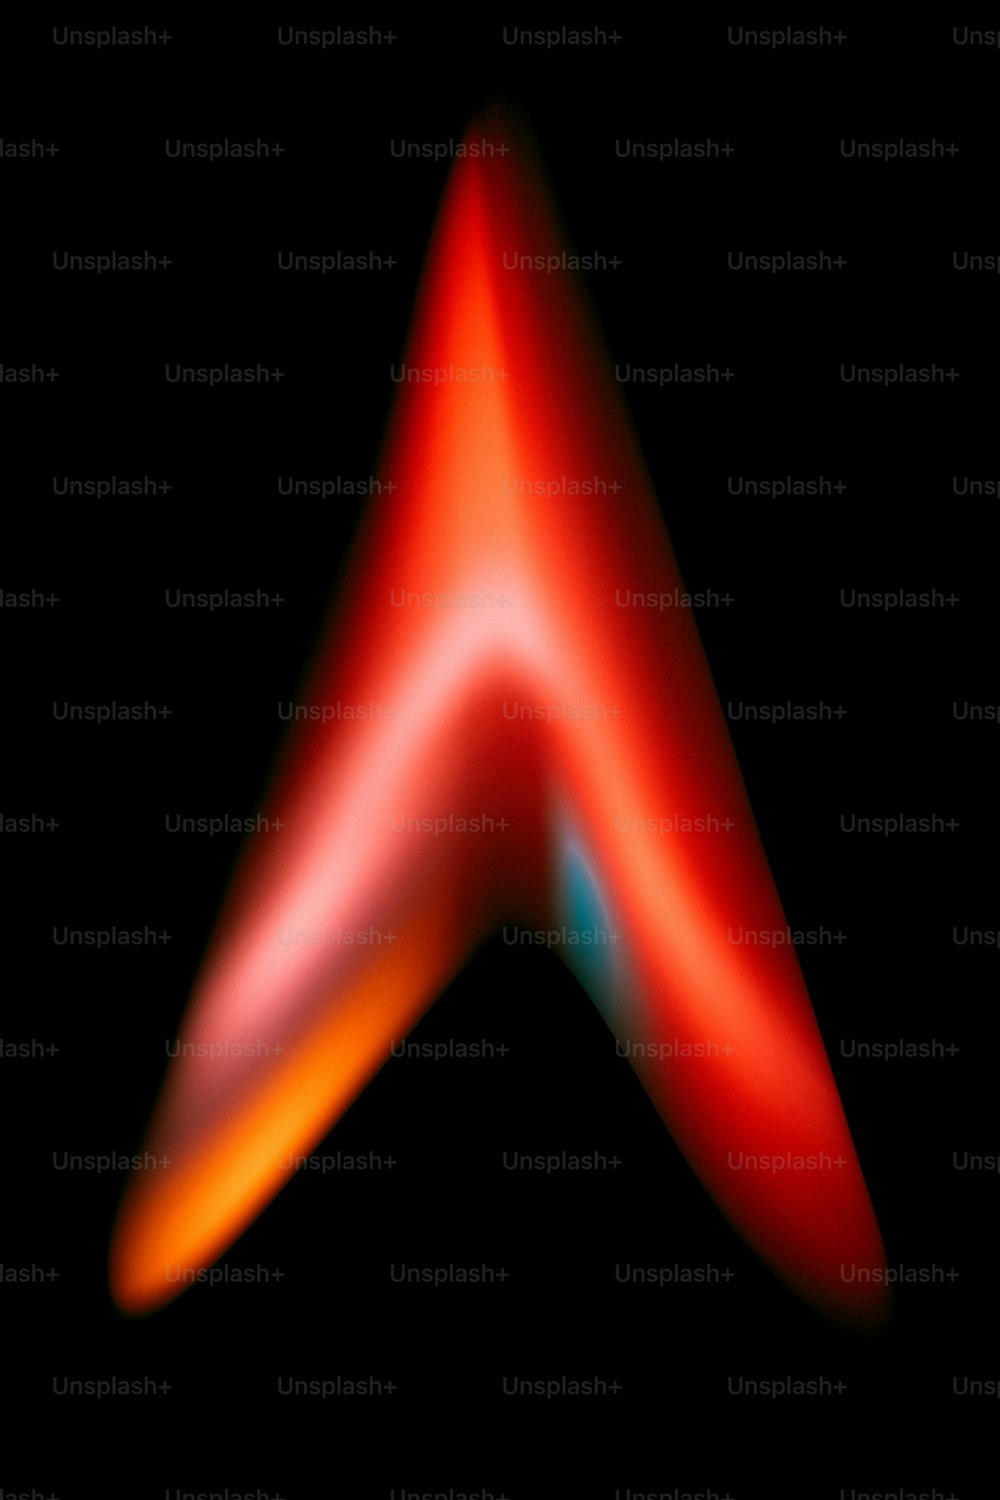 검은색 배경에 빨간색 삼각형의 흐릿한 이미지